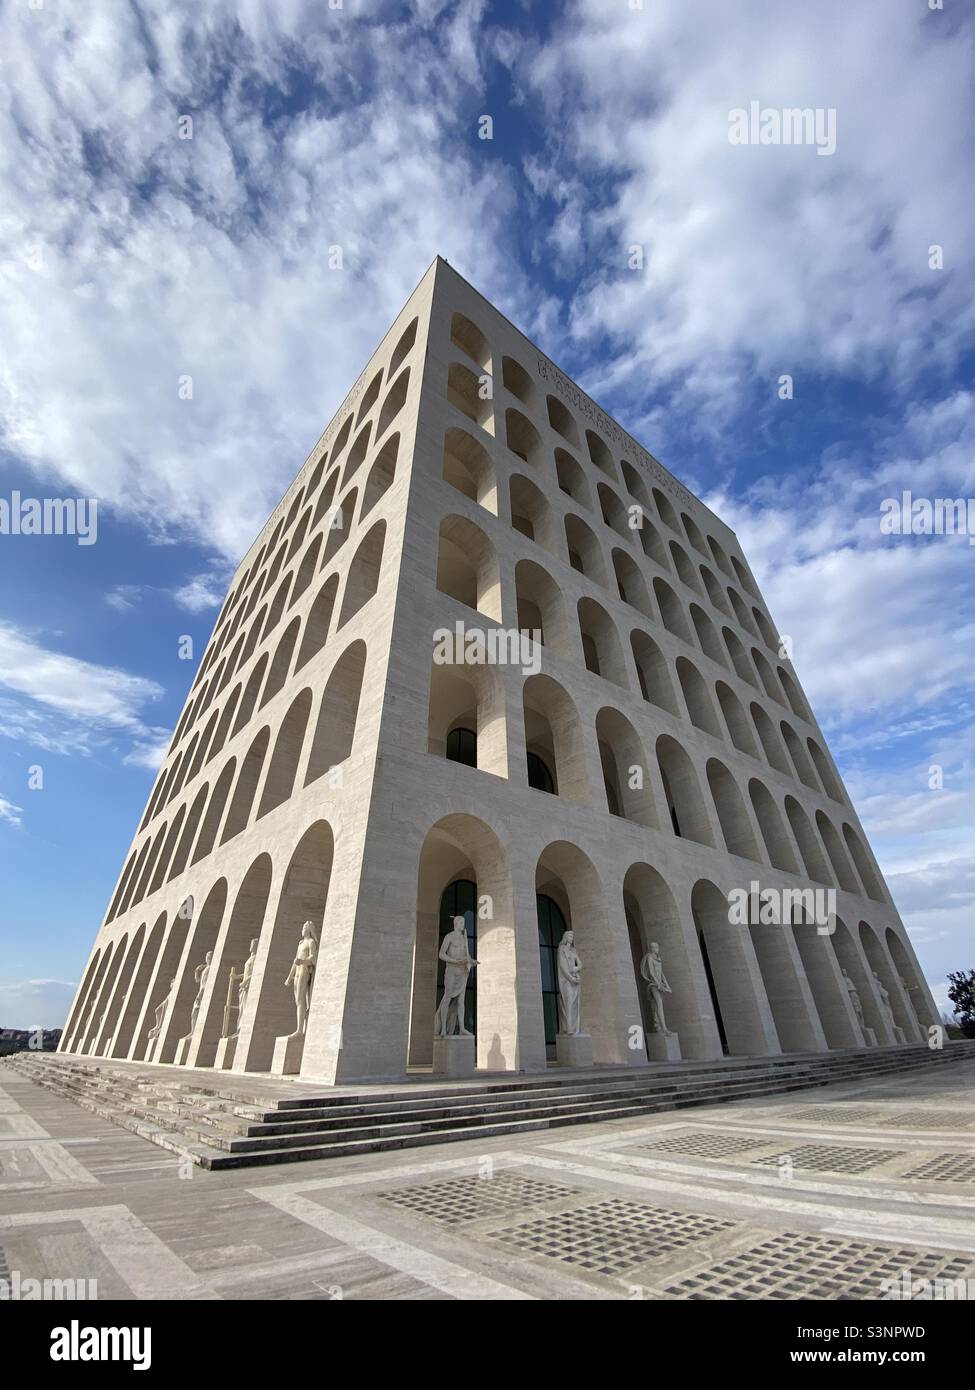 Palazzo della Civiltà italiana, Colosseo quadrato, squadre colosseum, palace of the italian civilisation Stock Photo